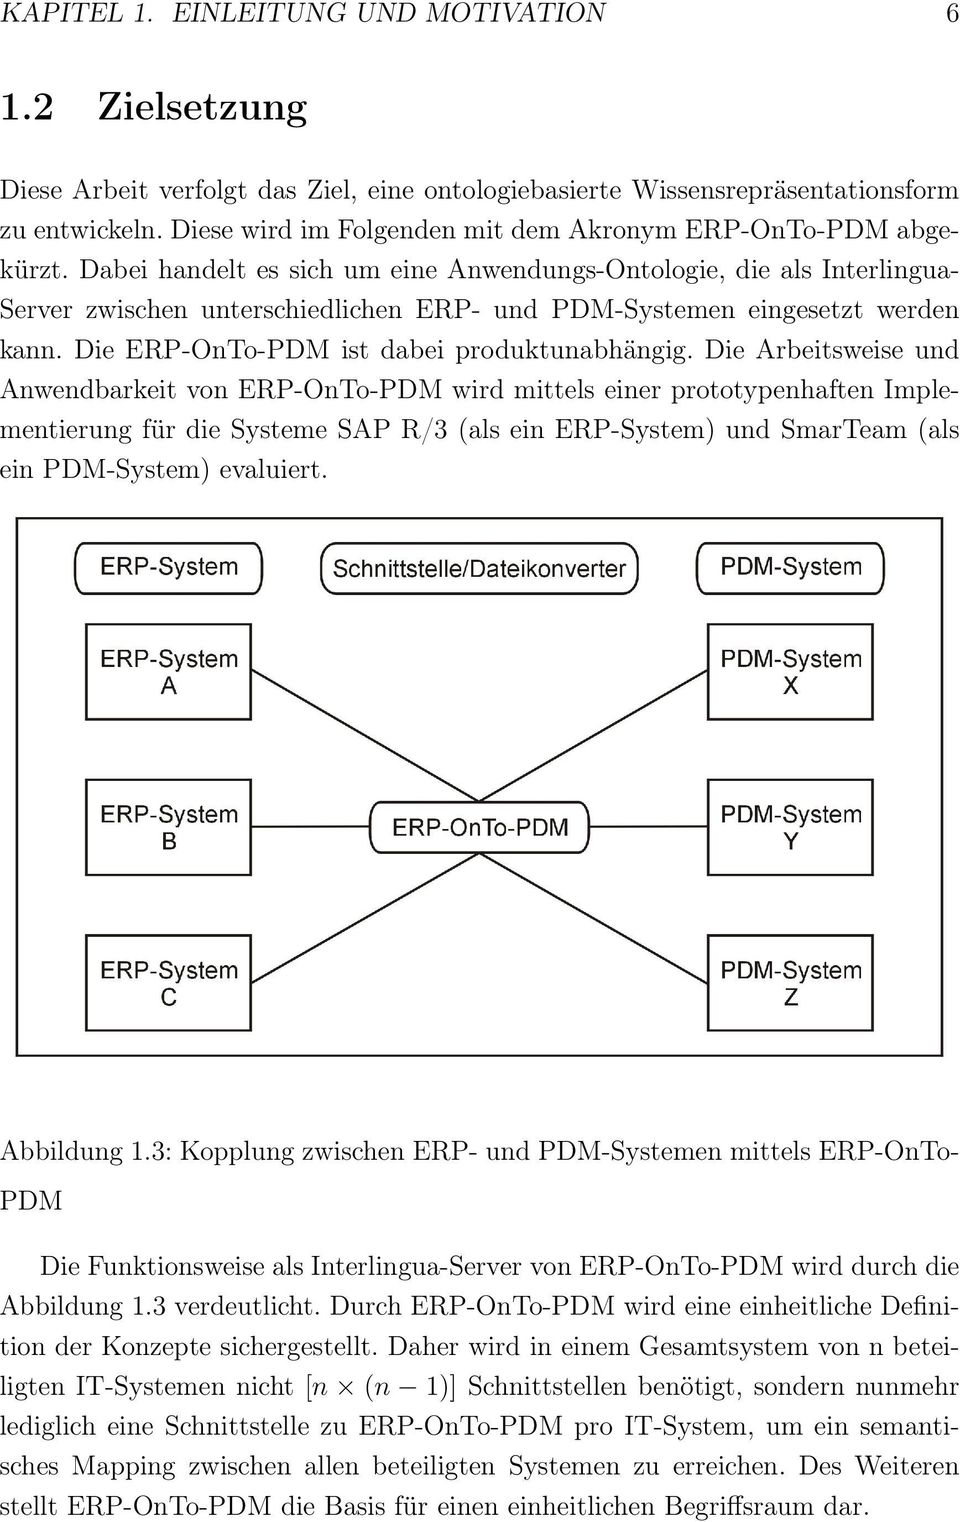 Dabei handelt es sich um eine Anwendungs-Ontologie, die als Interlingua- Server zwischen unterschiedlichen ERP- und PDM-Systemen eingesetzt werden kann. Die ERP-OnTo-PDM ist dabei produktunabhängig.